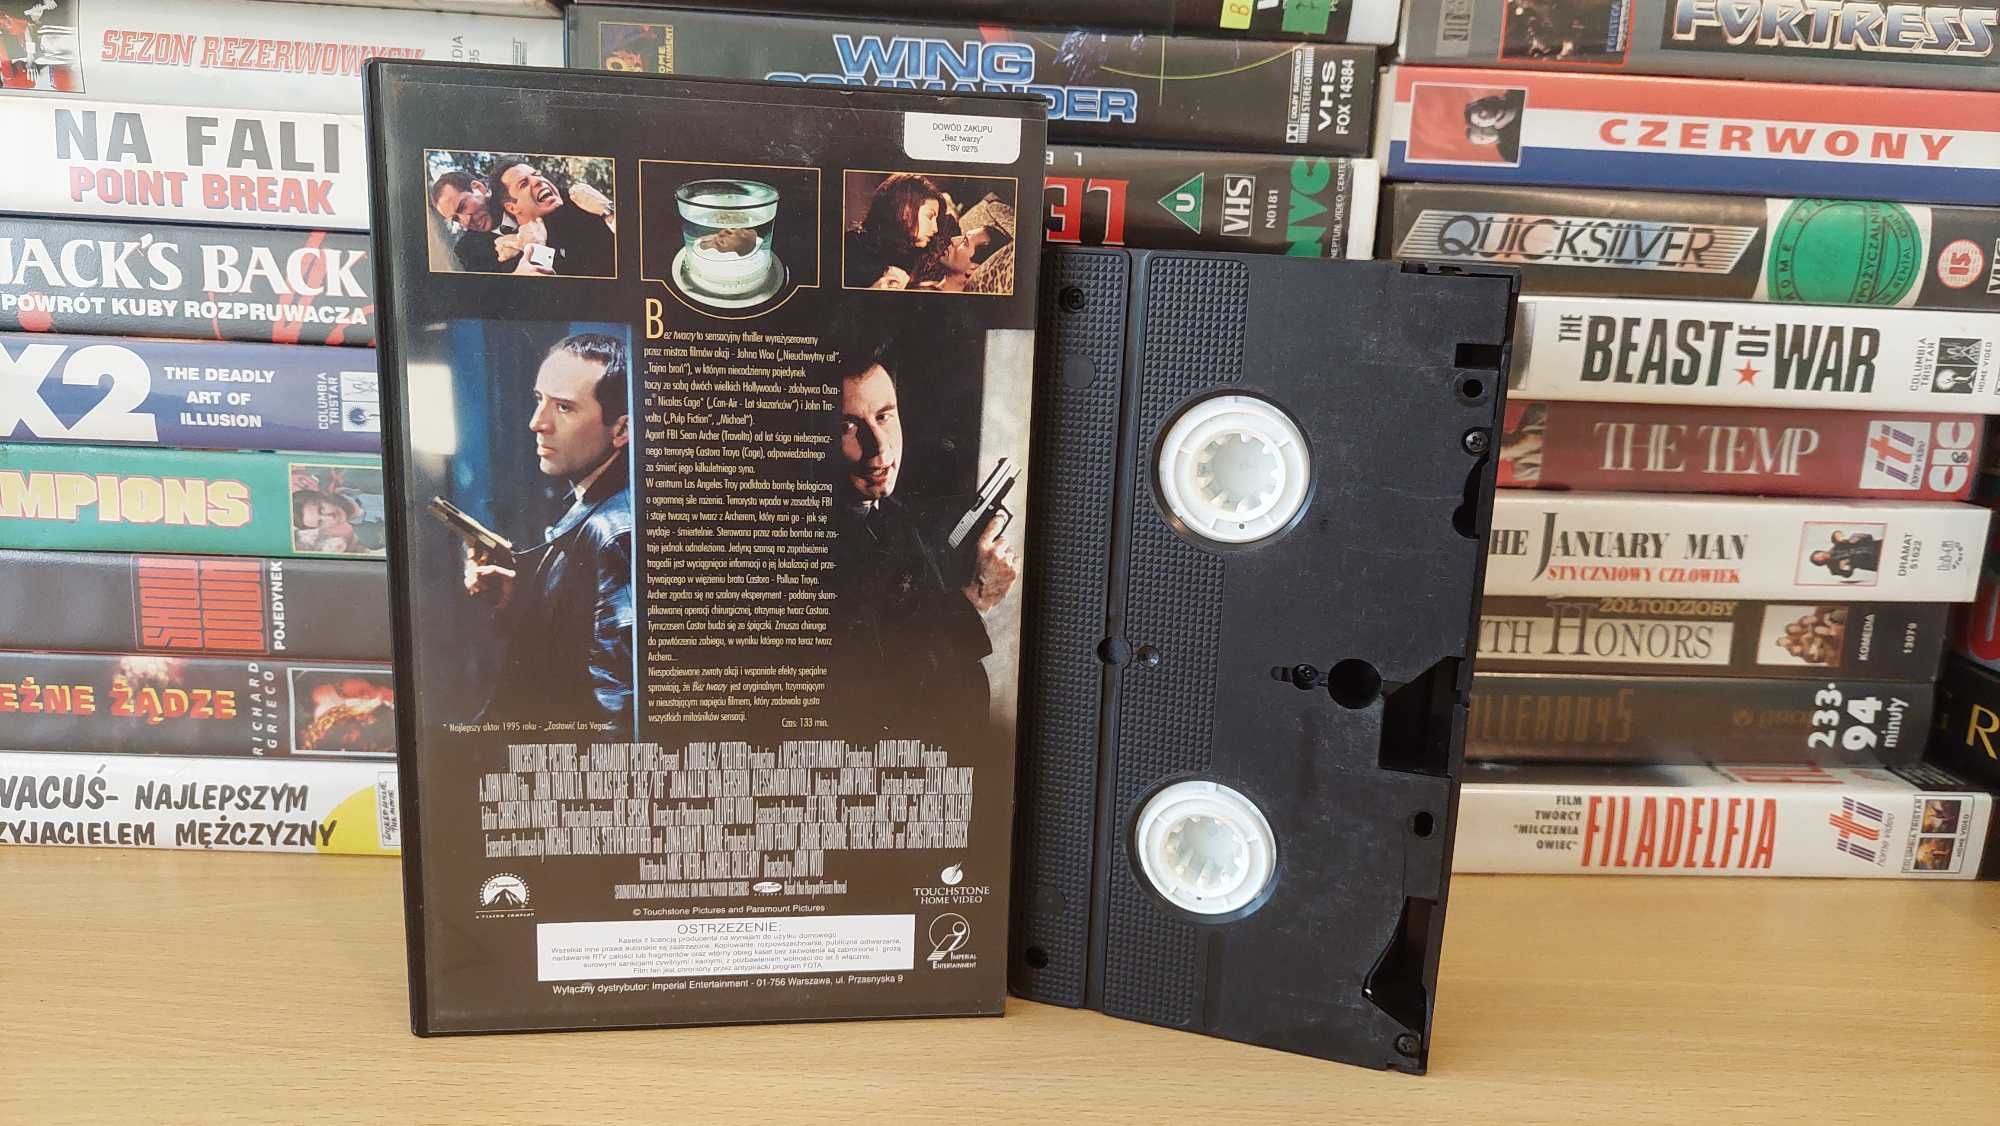 Bez Twarzy - (Face Off) - VHS